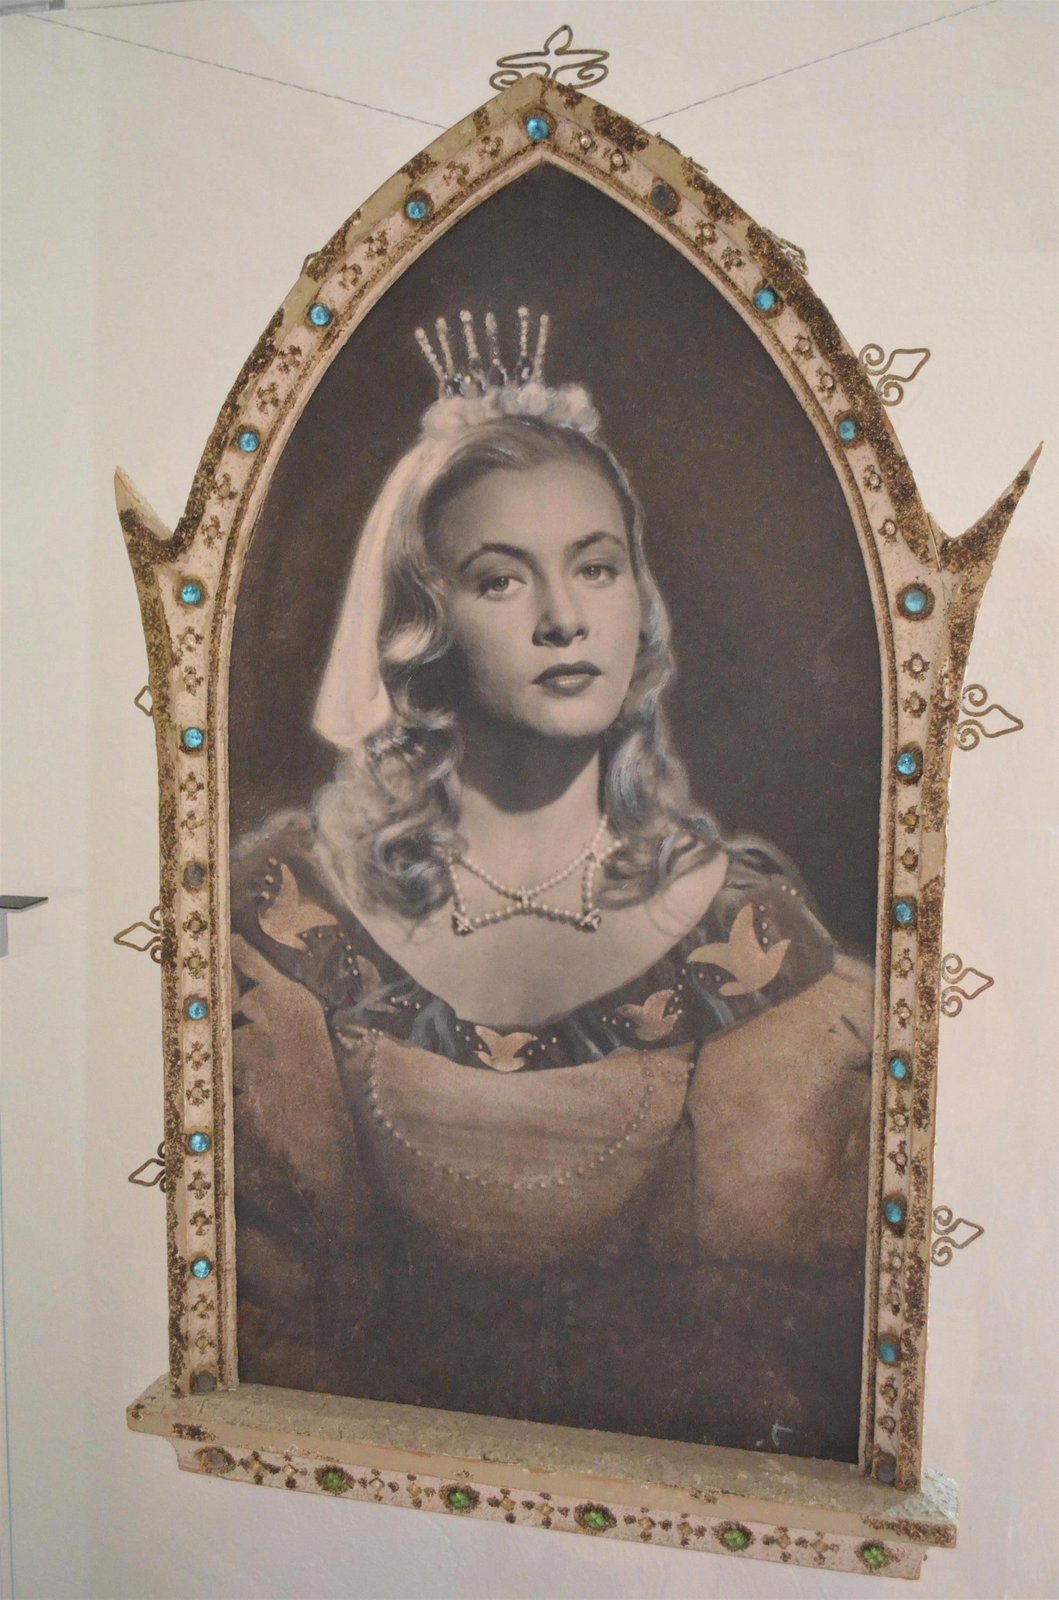 Nejvzácnější exponát výstavy. Tento protrét princezny Krasomily se stal kulturním dědictvím ČR.